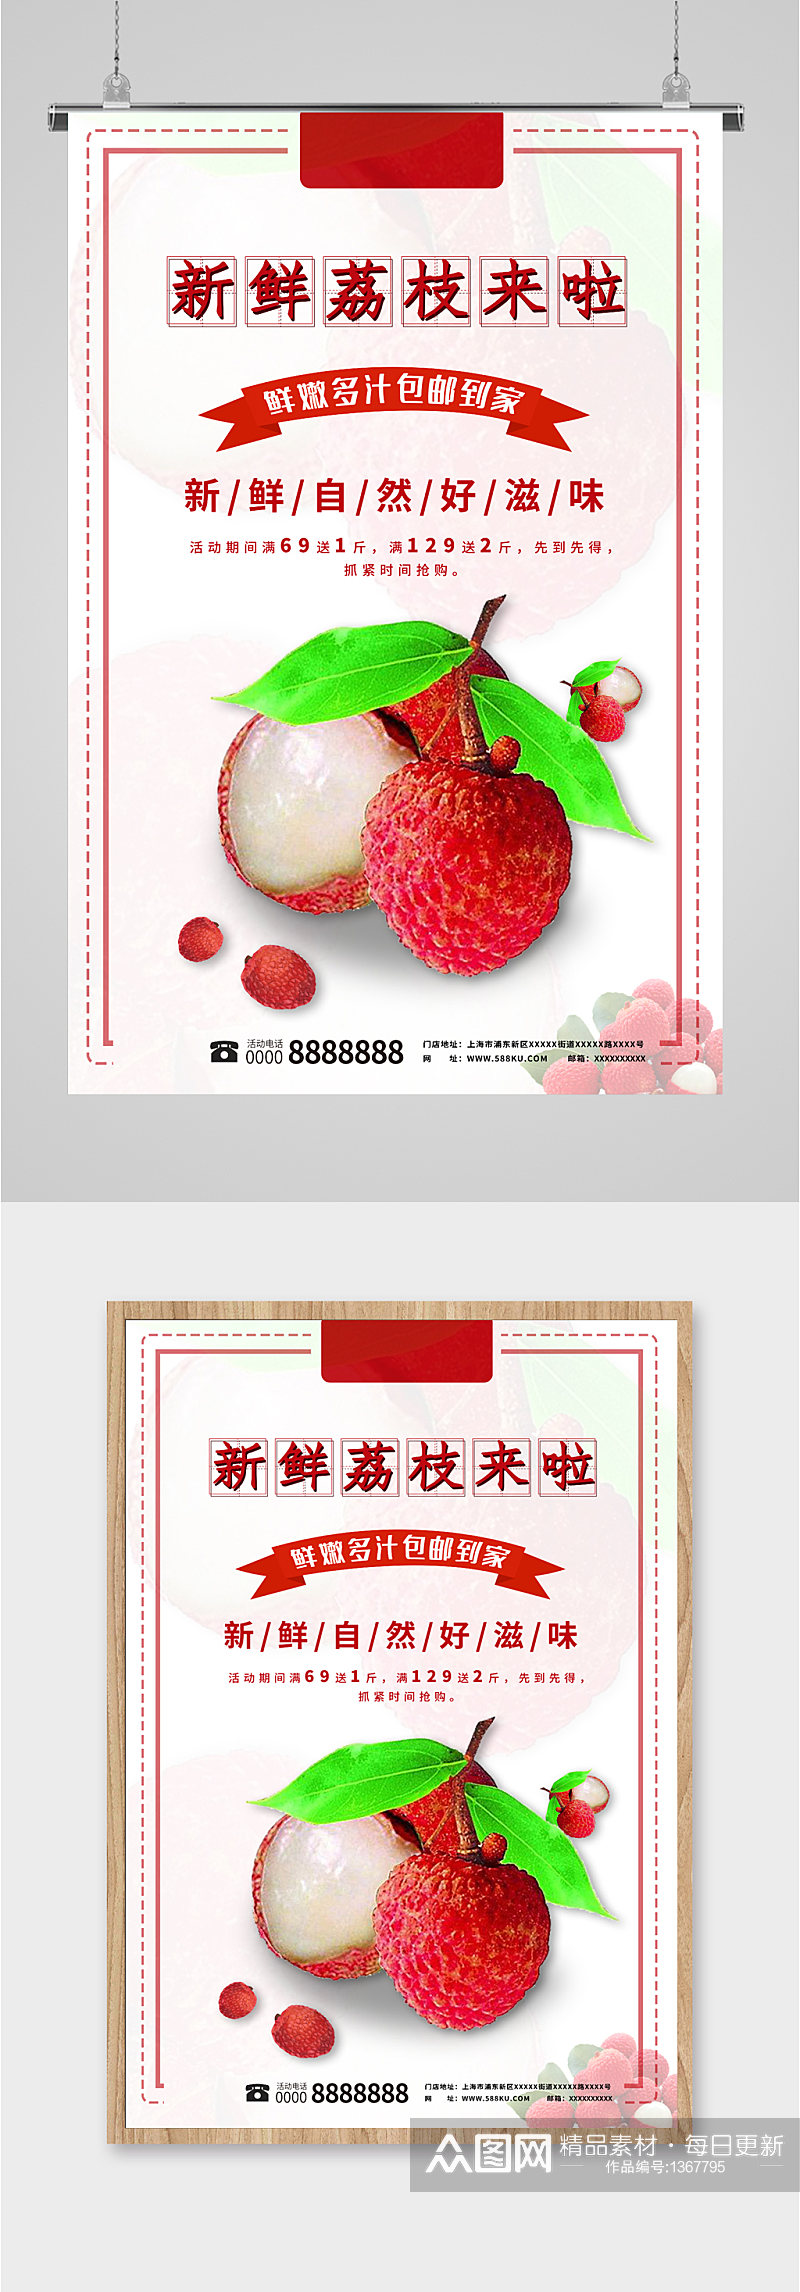 新鲜荔枝水果促销海报素材